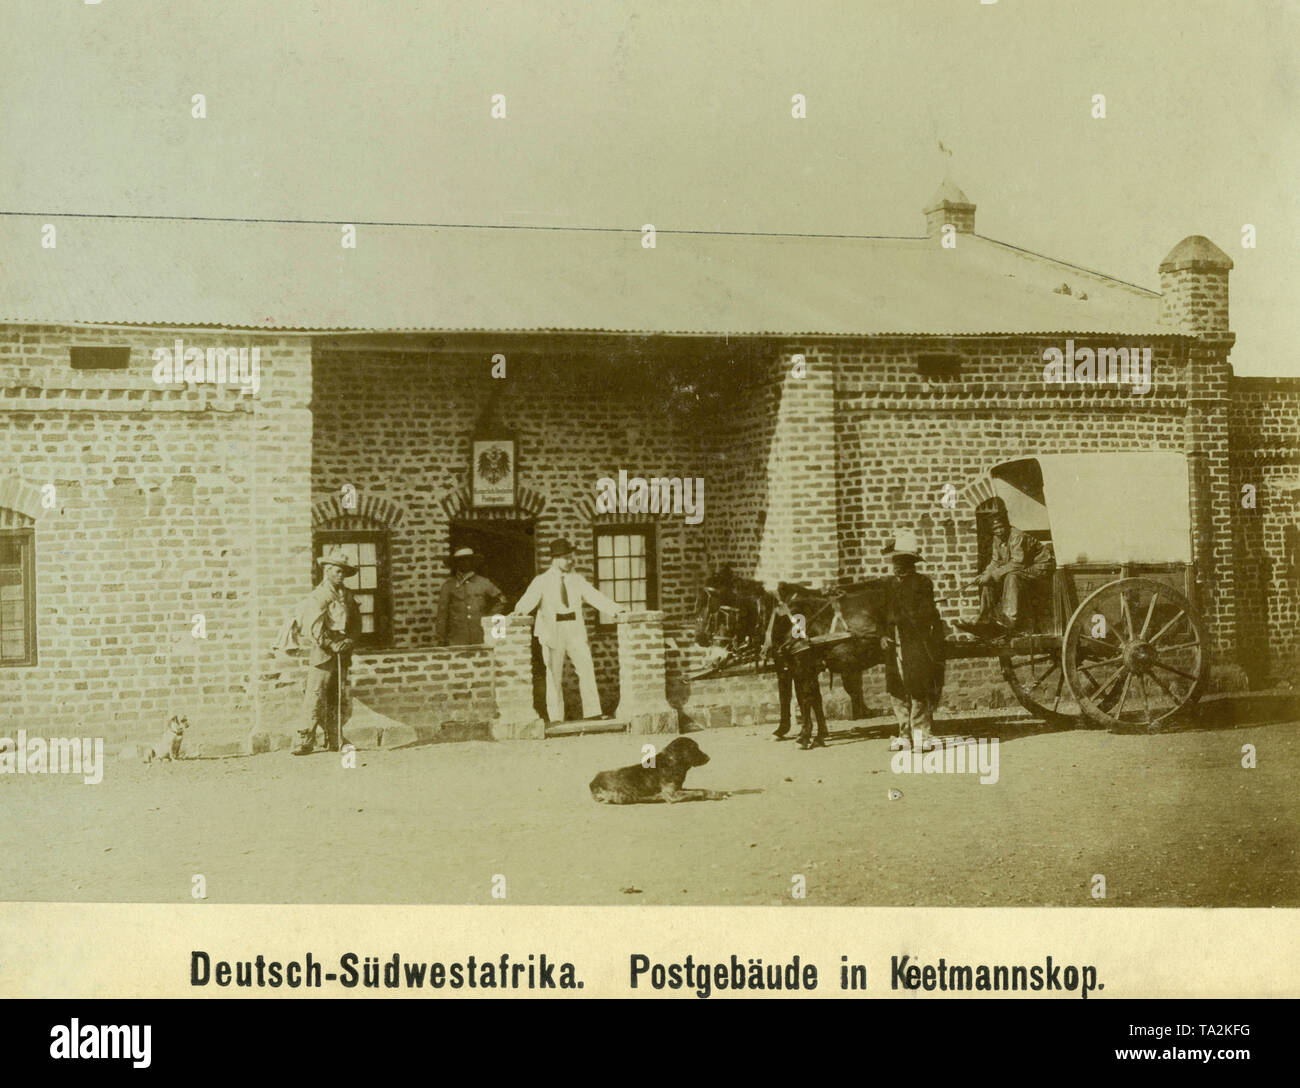 Une diligence est en face de l'agence postale allemande impériale dans Keetmanskoop allemand dans l'Afrique du Sud-ouest (photo non datée). Banque D'Images